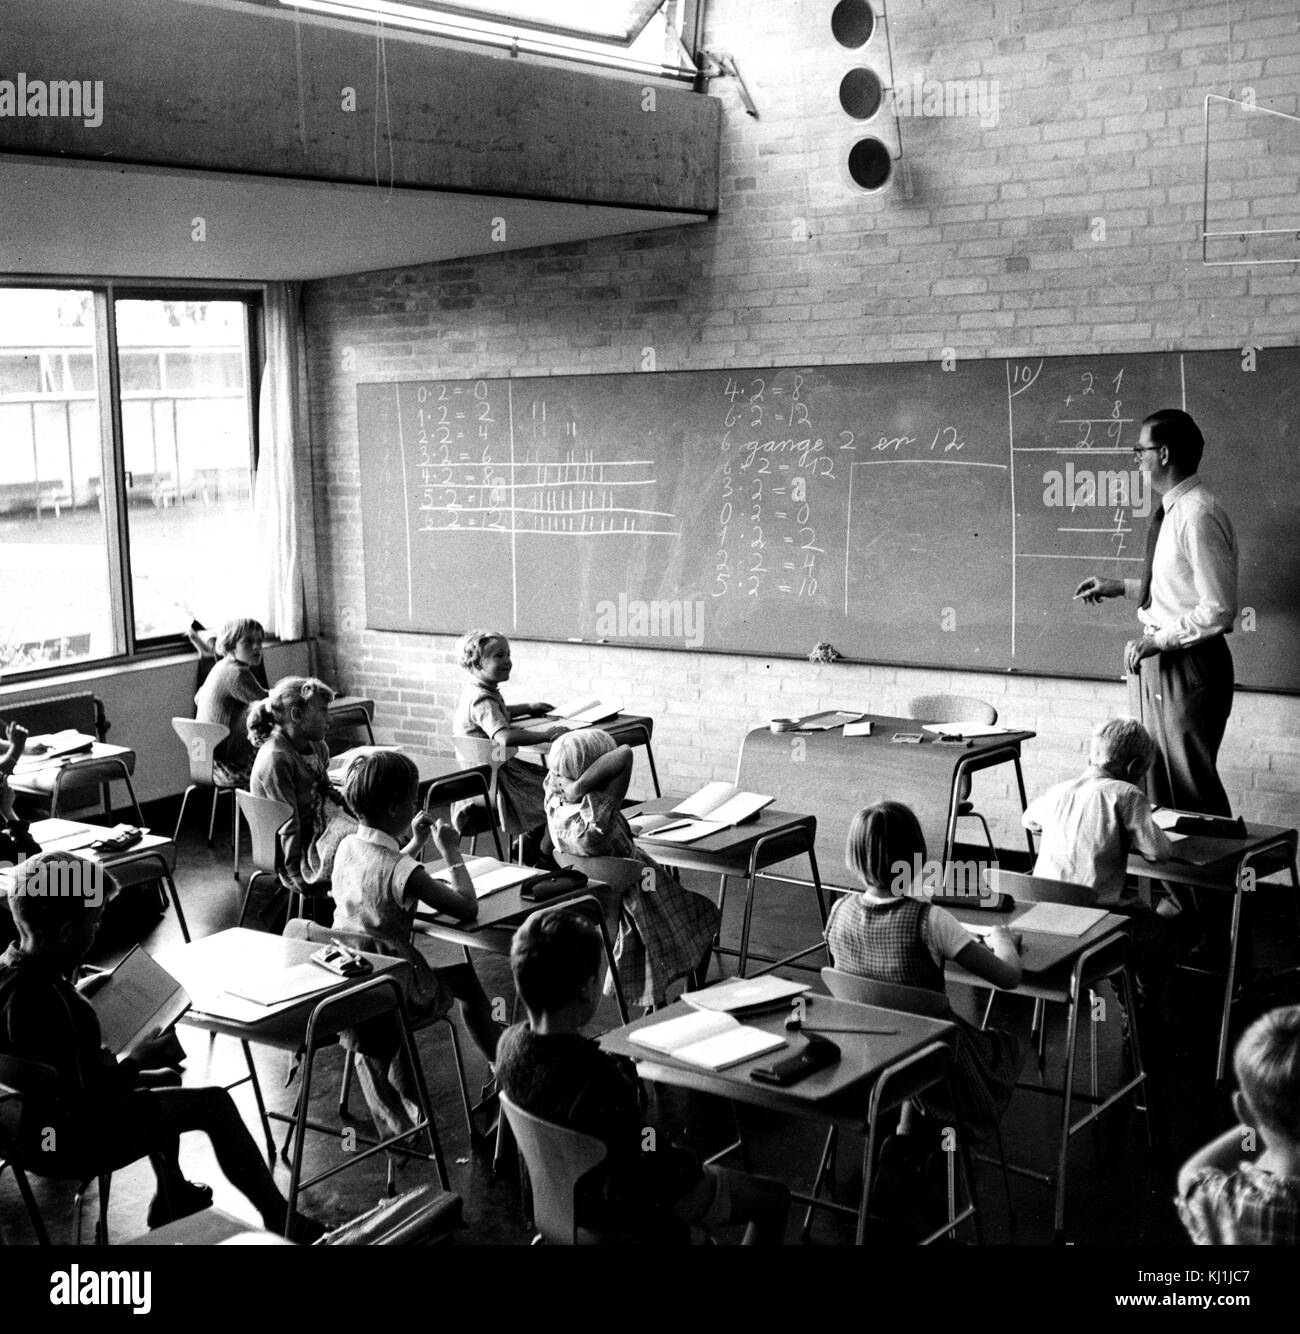 Foto eines Klassenzimmers in der Rygaards International School, eine private christliche/Katholische internationale Schule in Kopenhagen, Dänemark. Vom 20. Jahrhundert Stockfoto